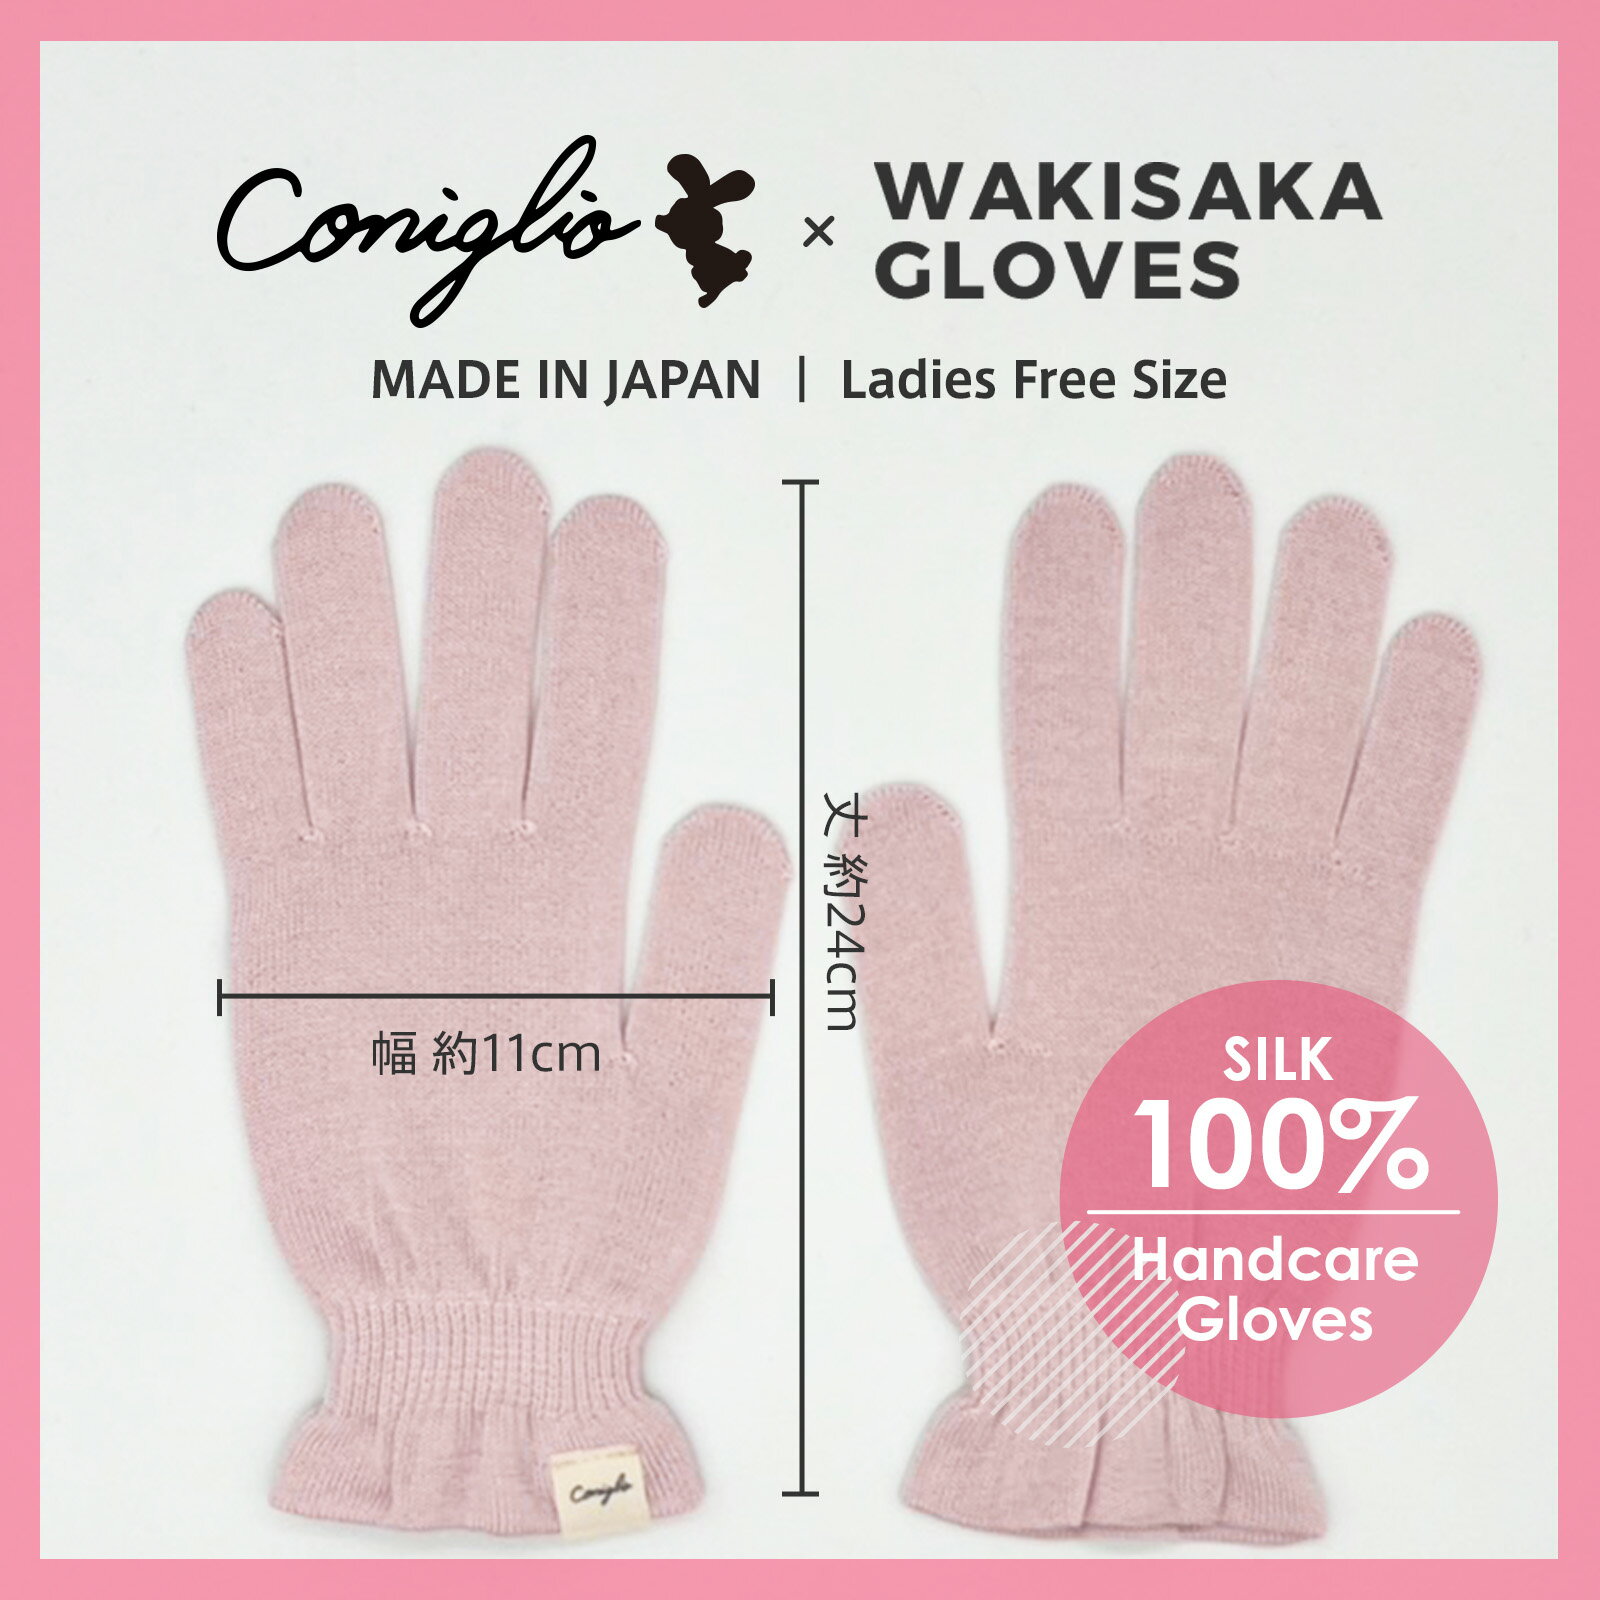 ハンドケア おやすみ ナイトケア シルク 100% 手袋 Conigilio × WAKISAKA GLOVES 「指先まで美しく」日本製 保温 乾燥 UVカット 冷え性 手荒れ あかぎれ ひびわれ 対策 ハンドクリームと合わせえて使える手袋 1